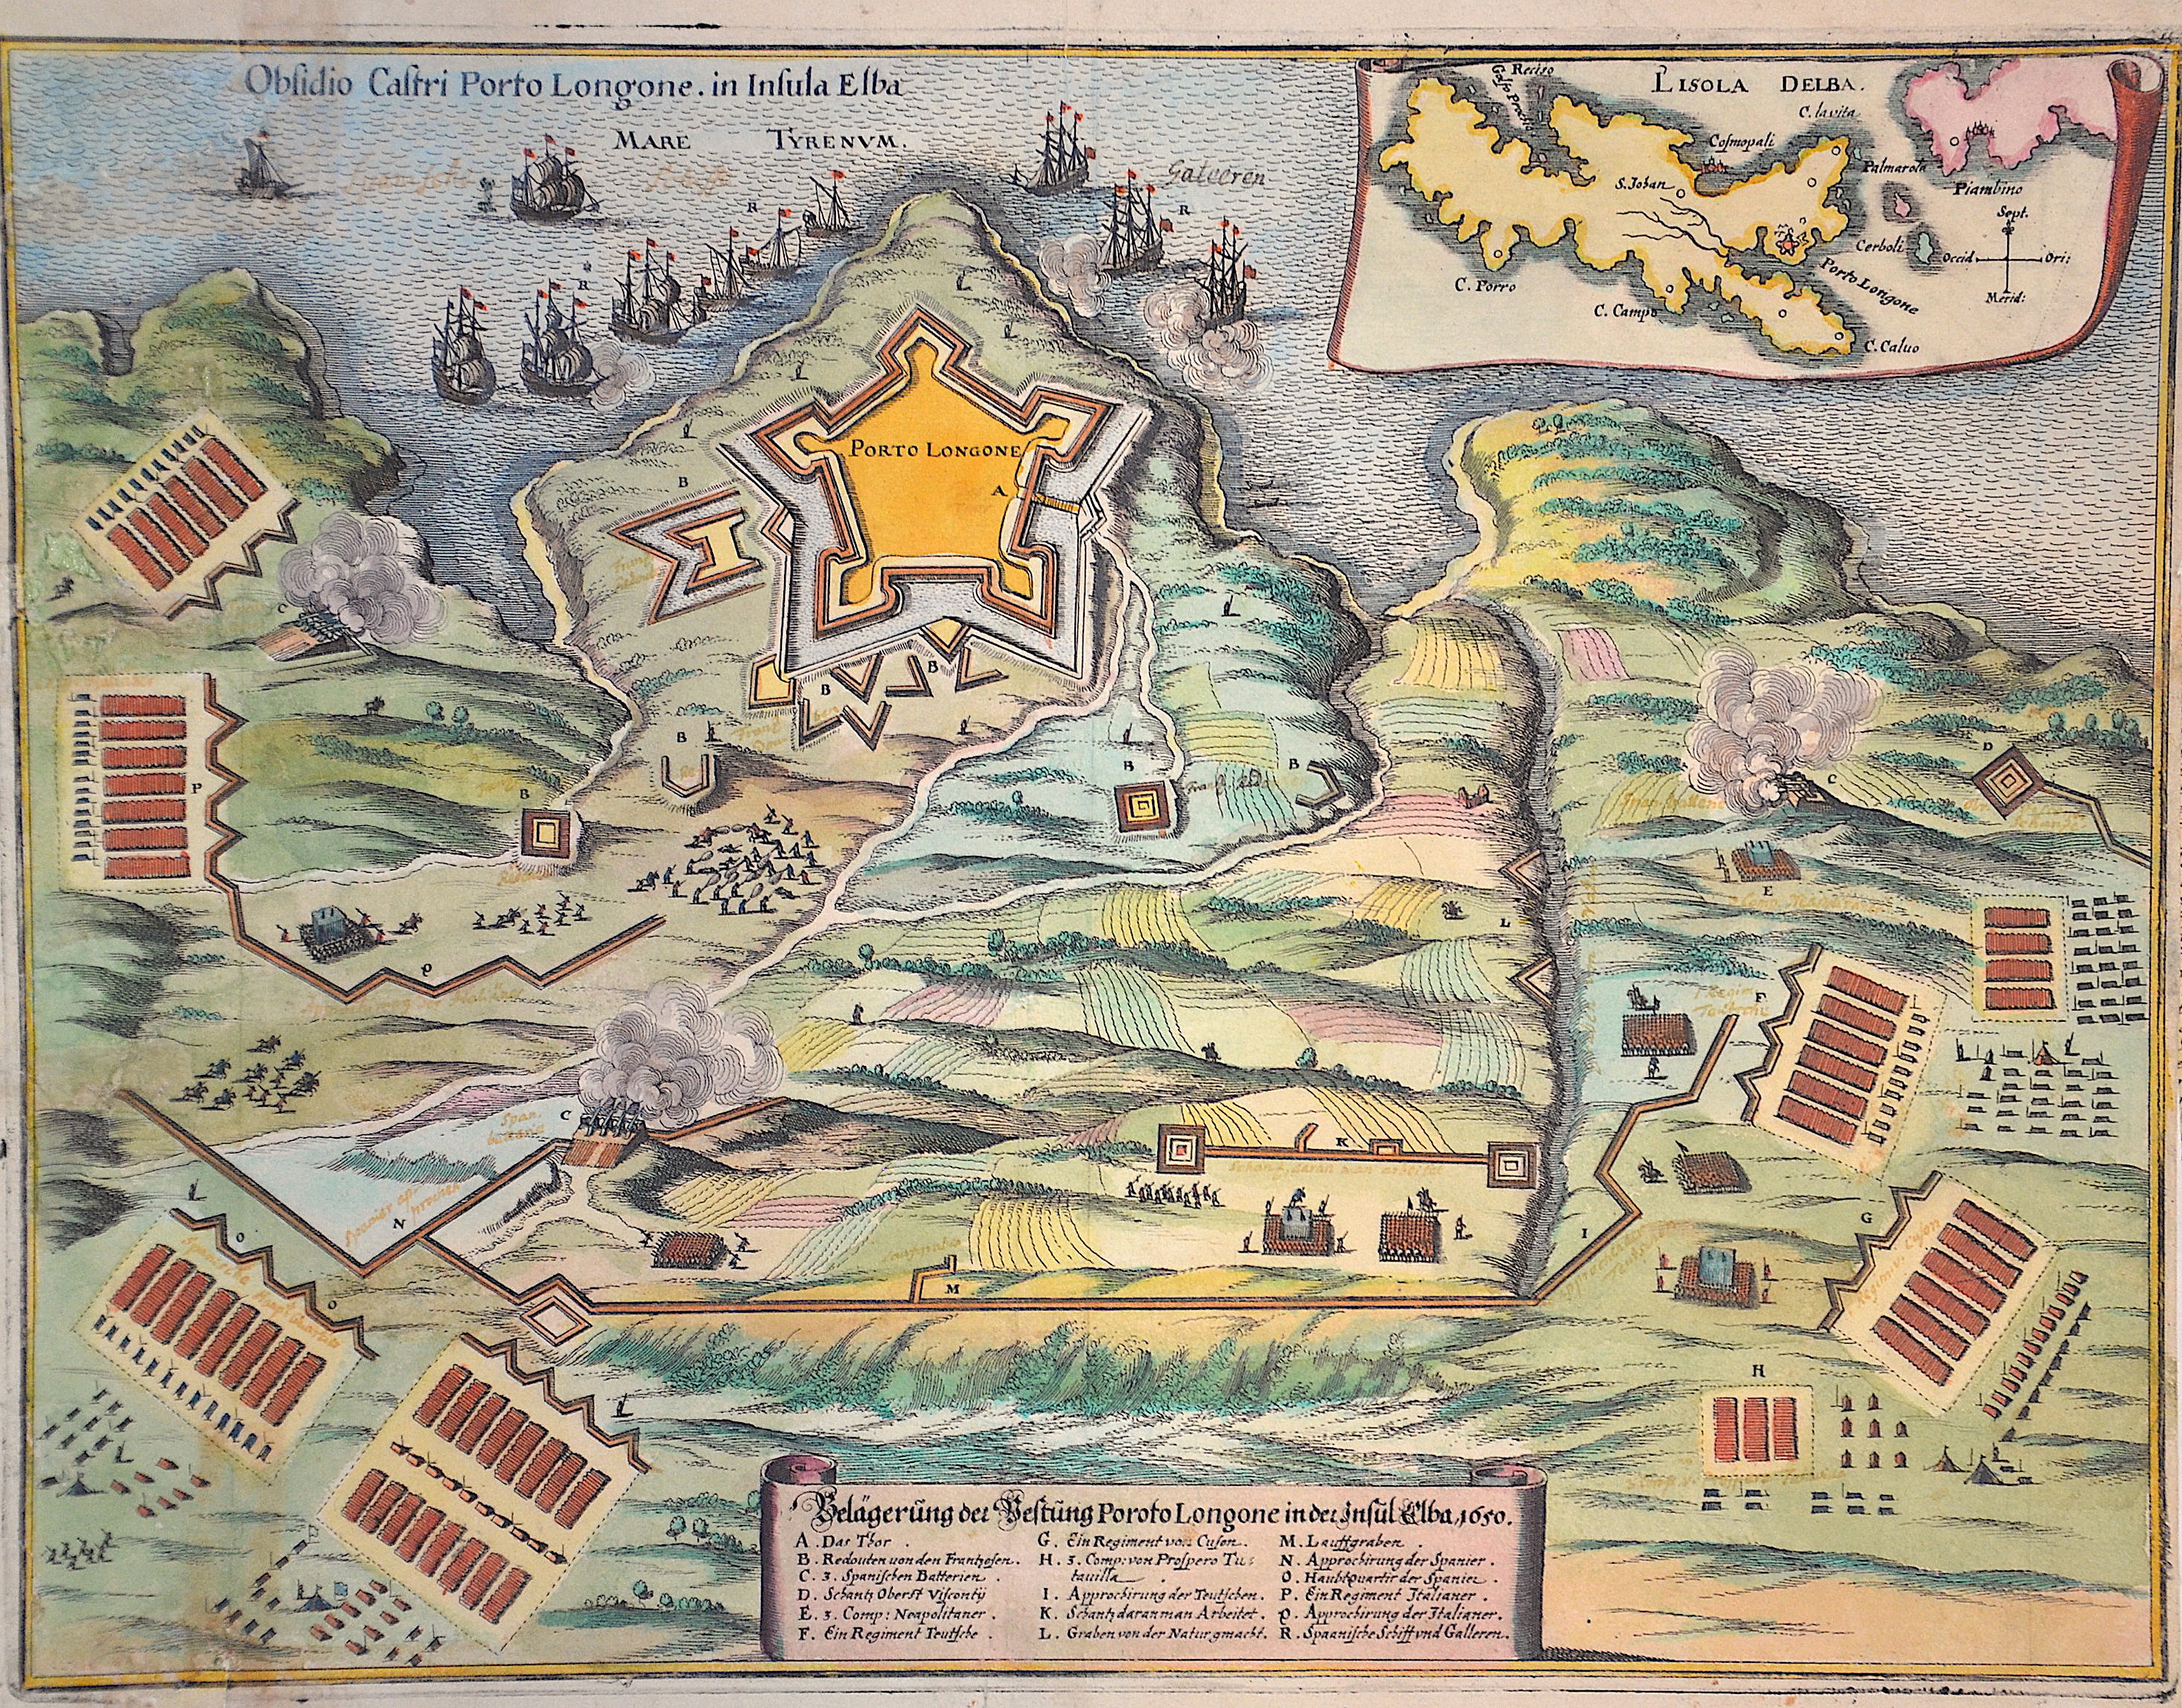 Merian  Belägerung der Vestung Poroto Longone in der Insul Elba, 1650.